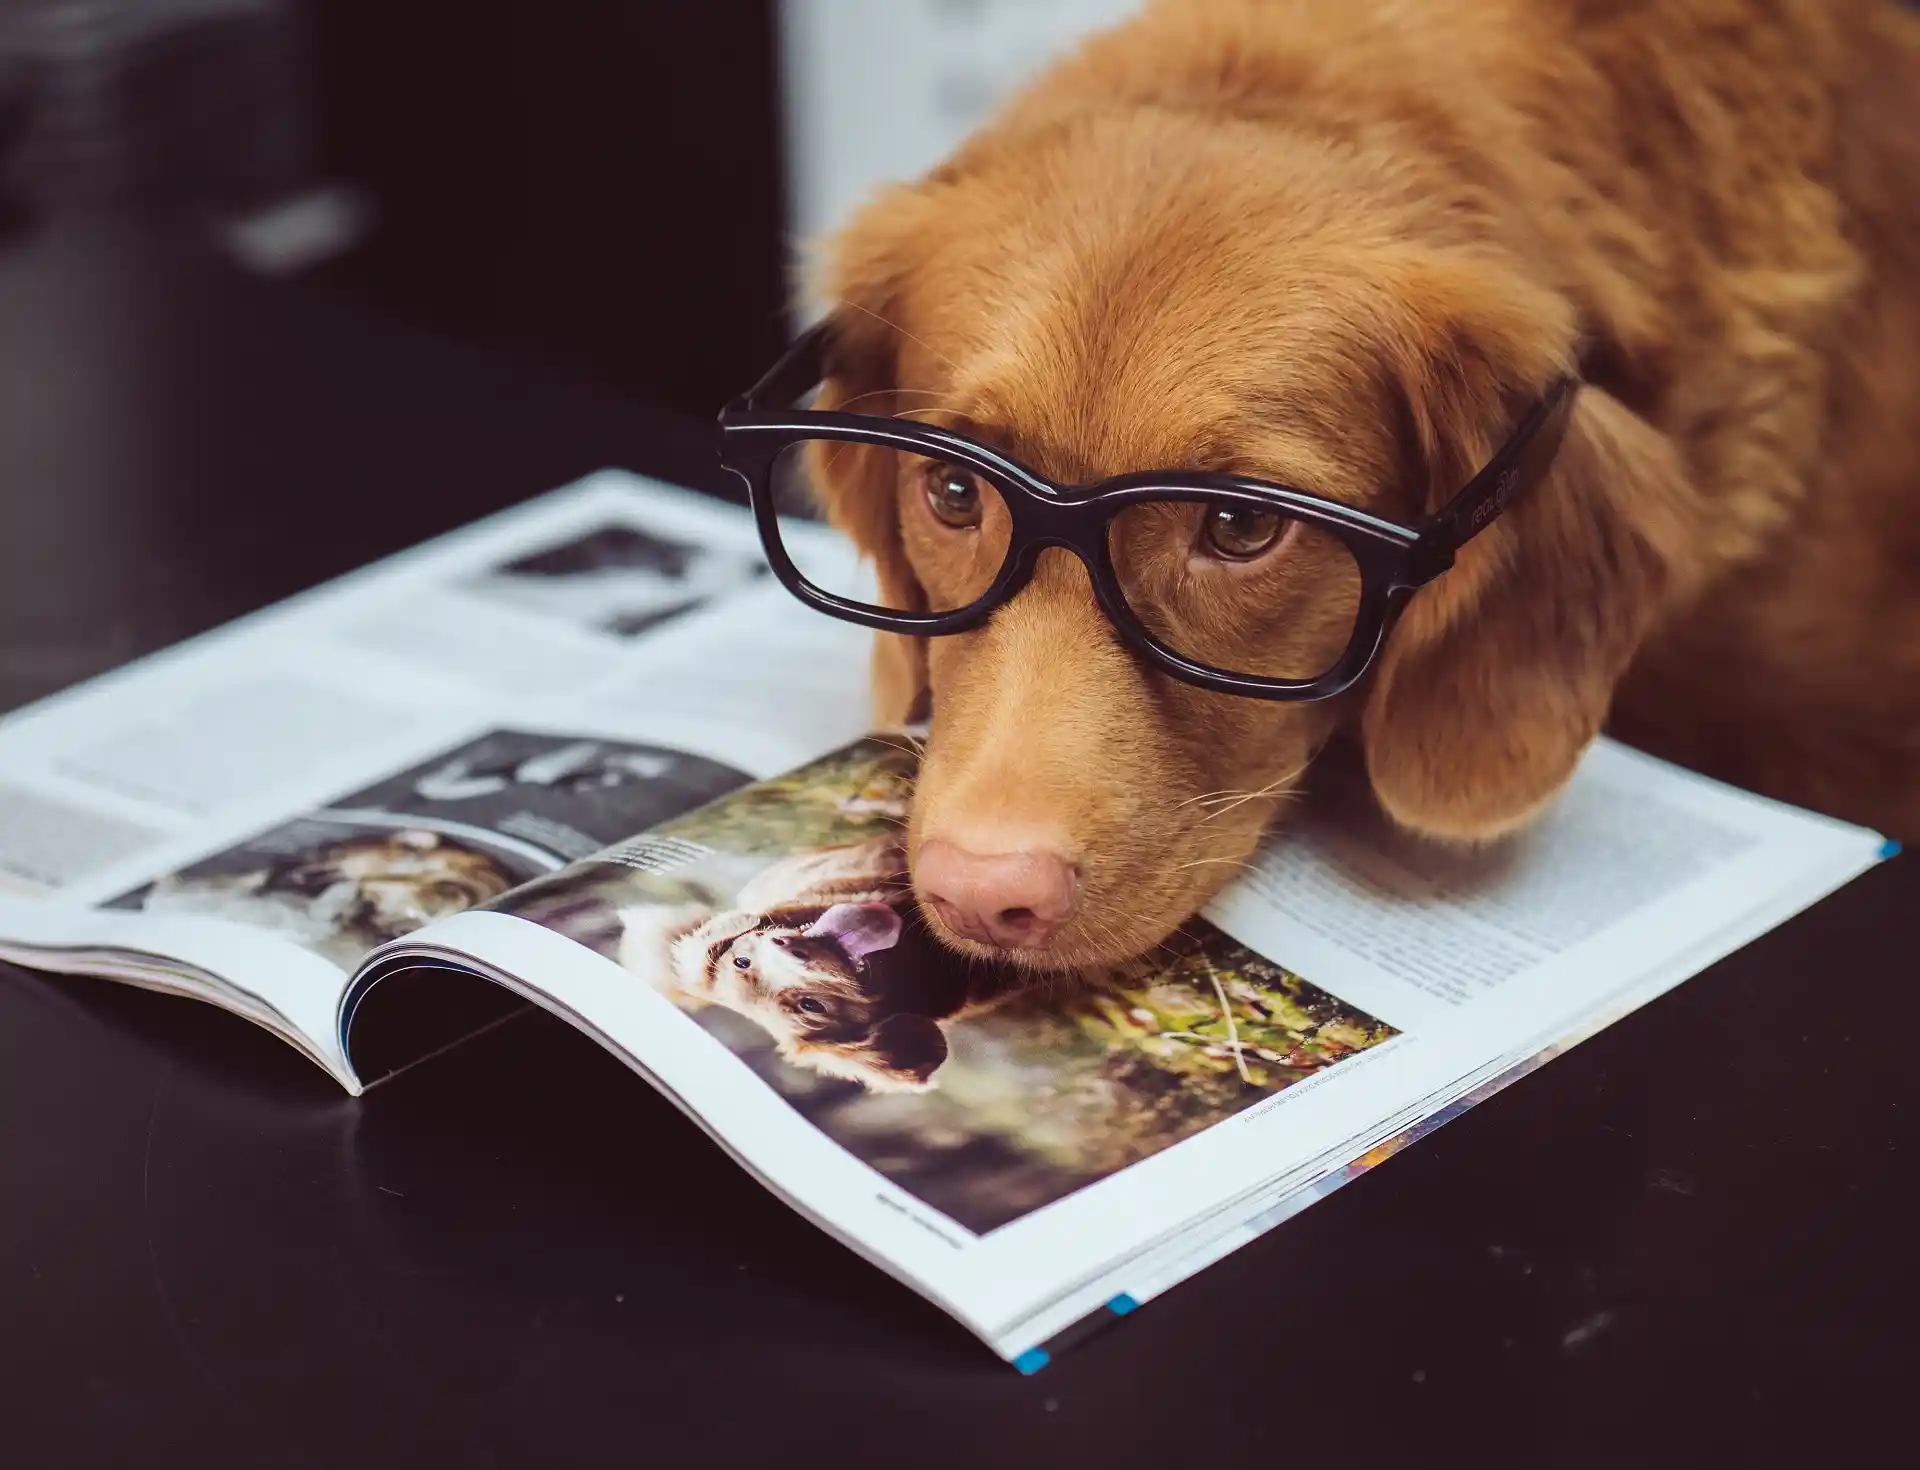 szemüveget viselő kutya az újságon pihenteti a fejét